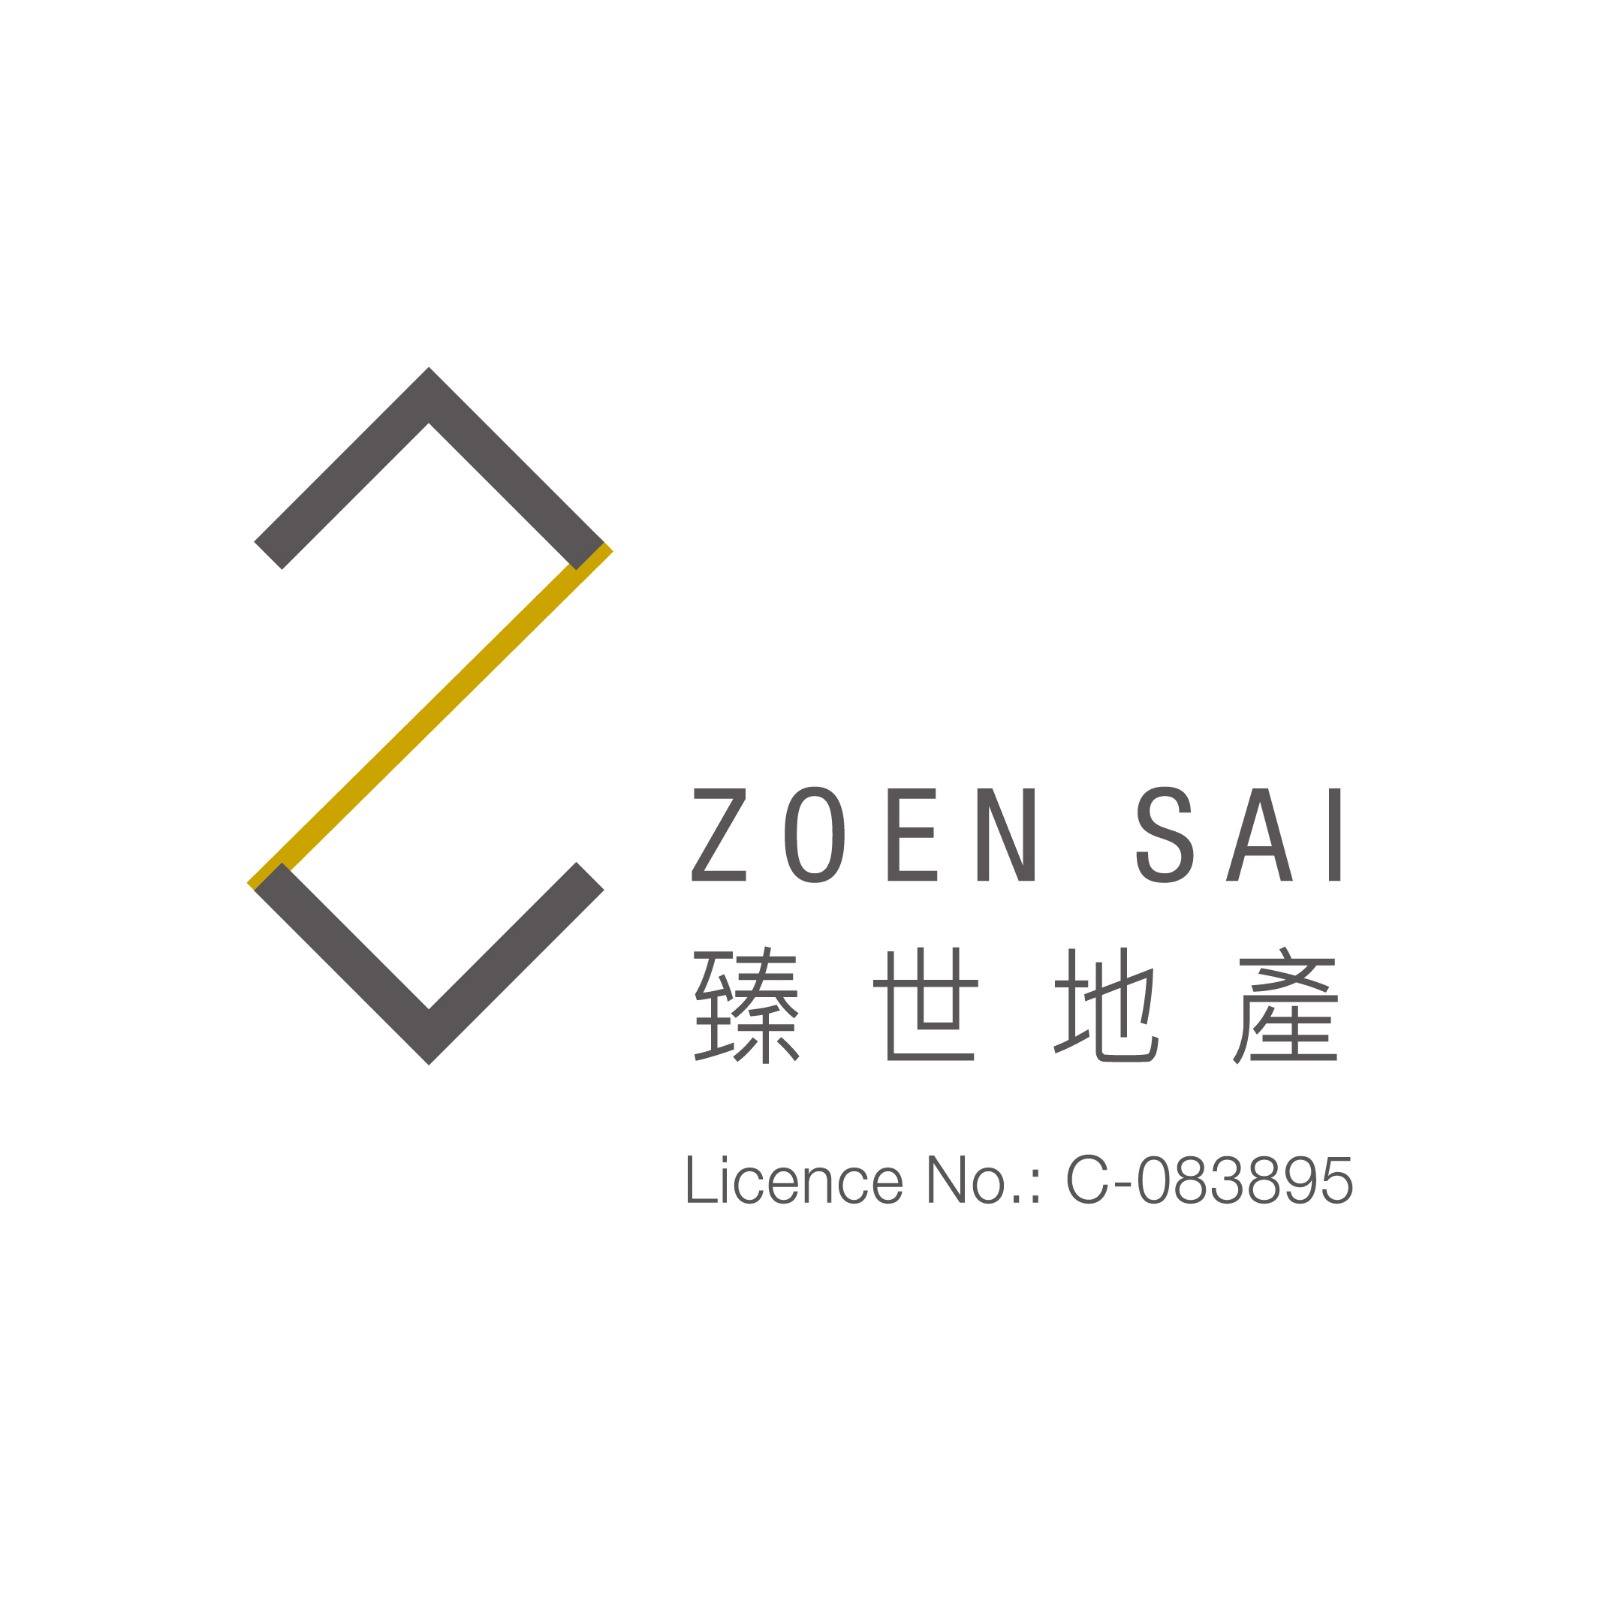 香港地產代理平台 HK Estate Agent 地產代理公司 / 地產代理人: Zoen Sai Property 臻世地產